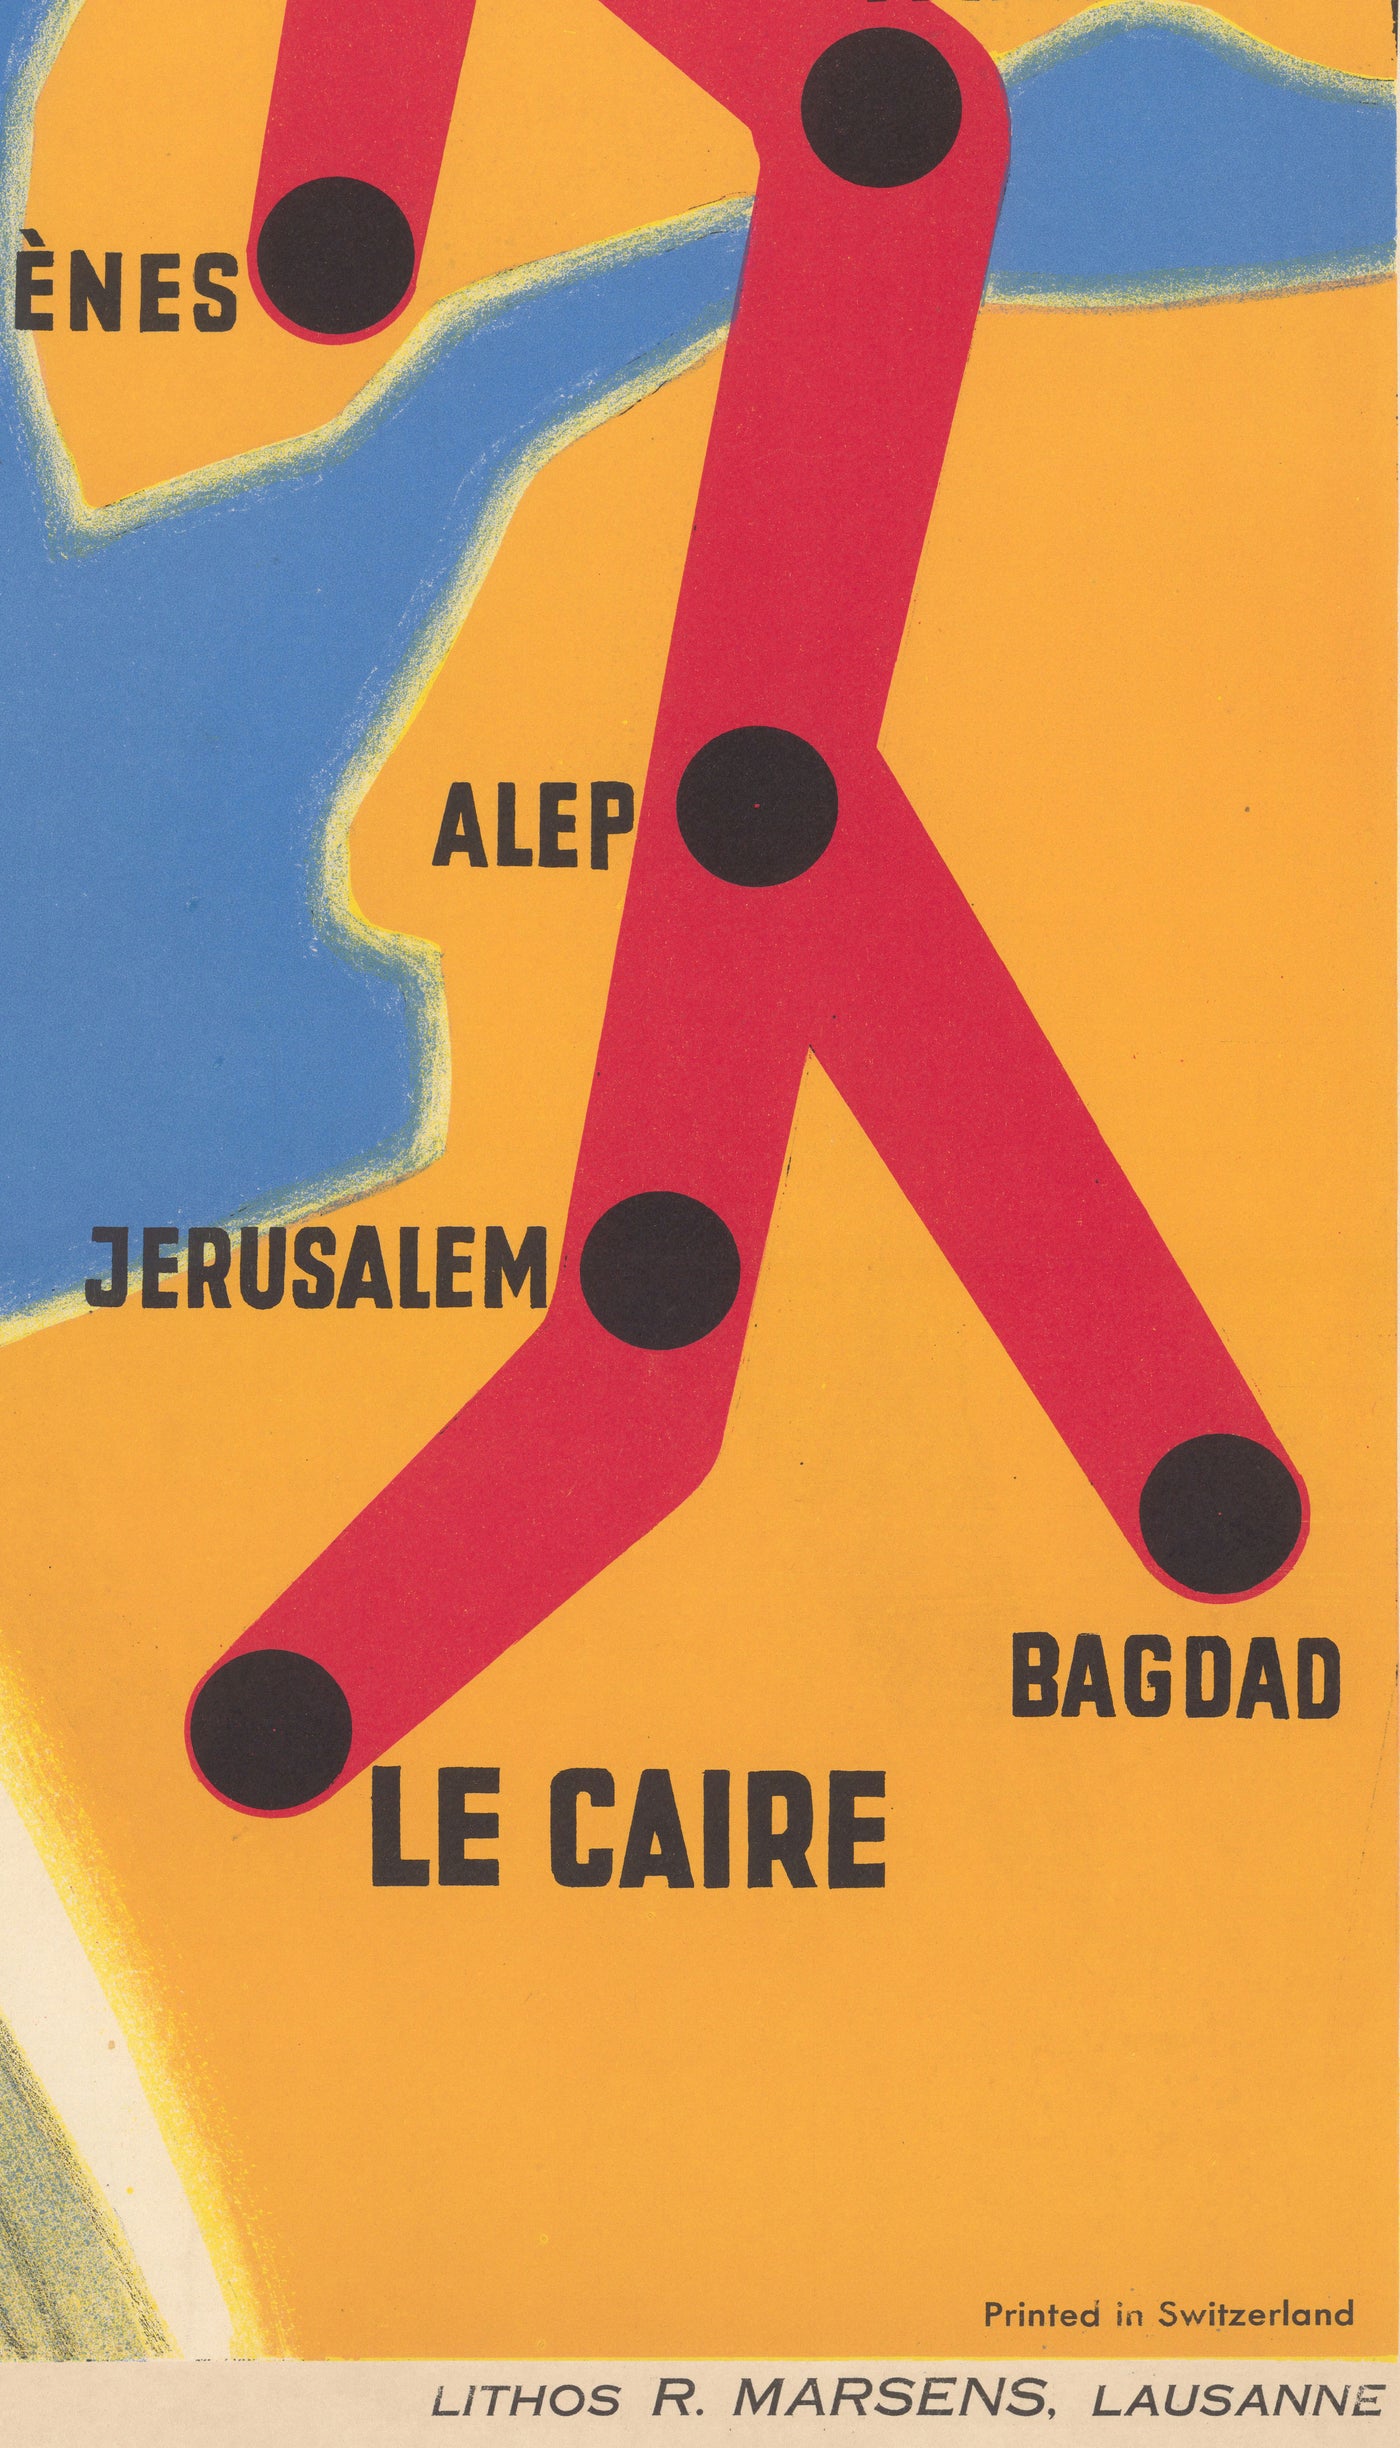 Alte Plakatkarte der Orient Express Bahn, 1947 von Walther Spinner - Simplon, Paris, Lausanne, Genf, Venedig, London, Kairo